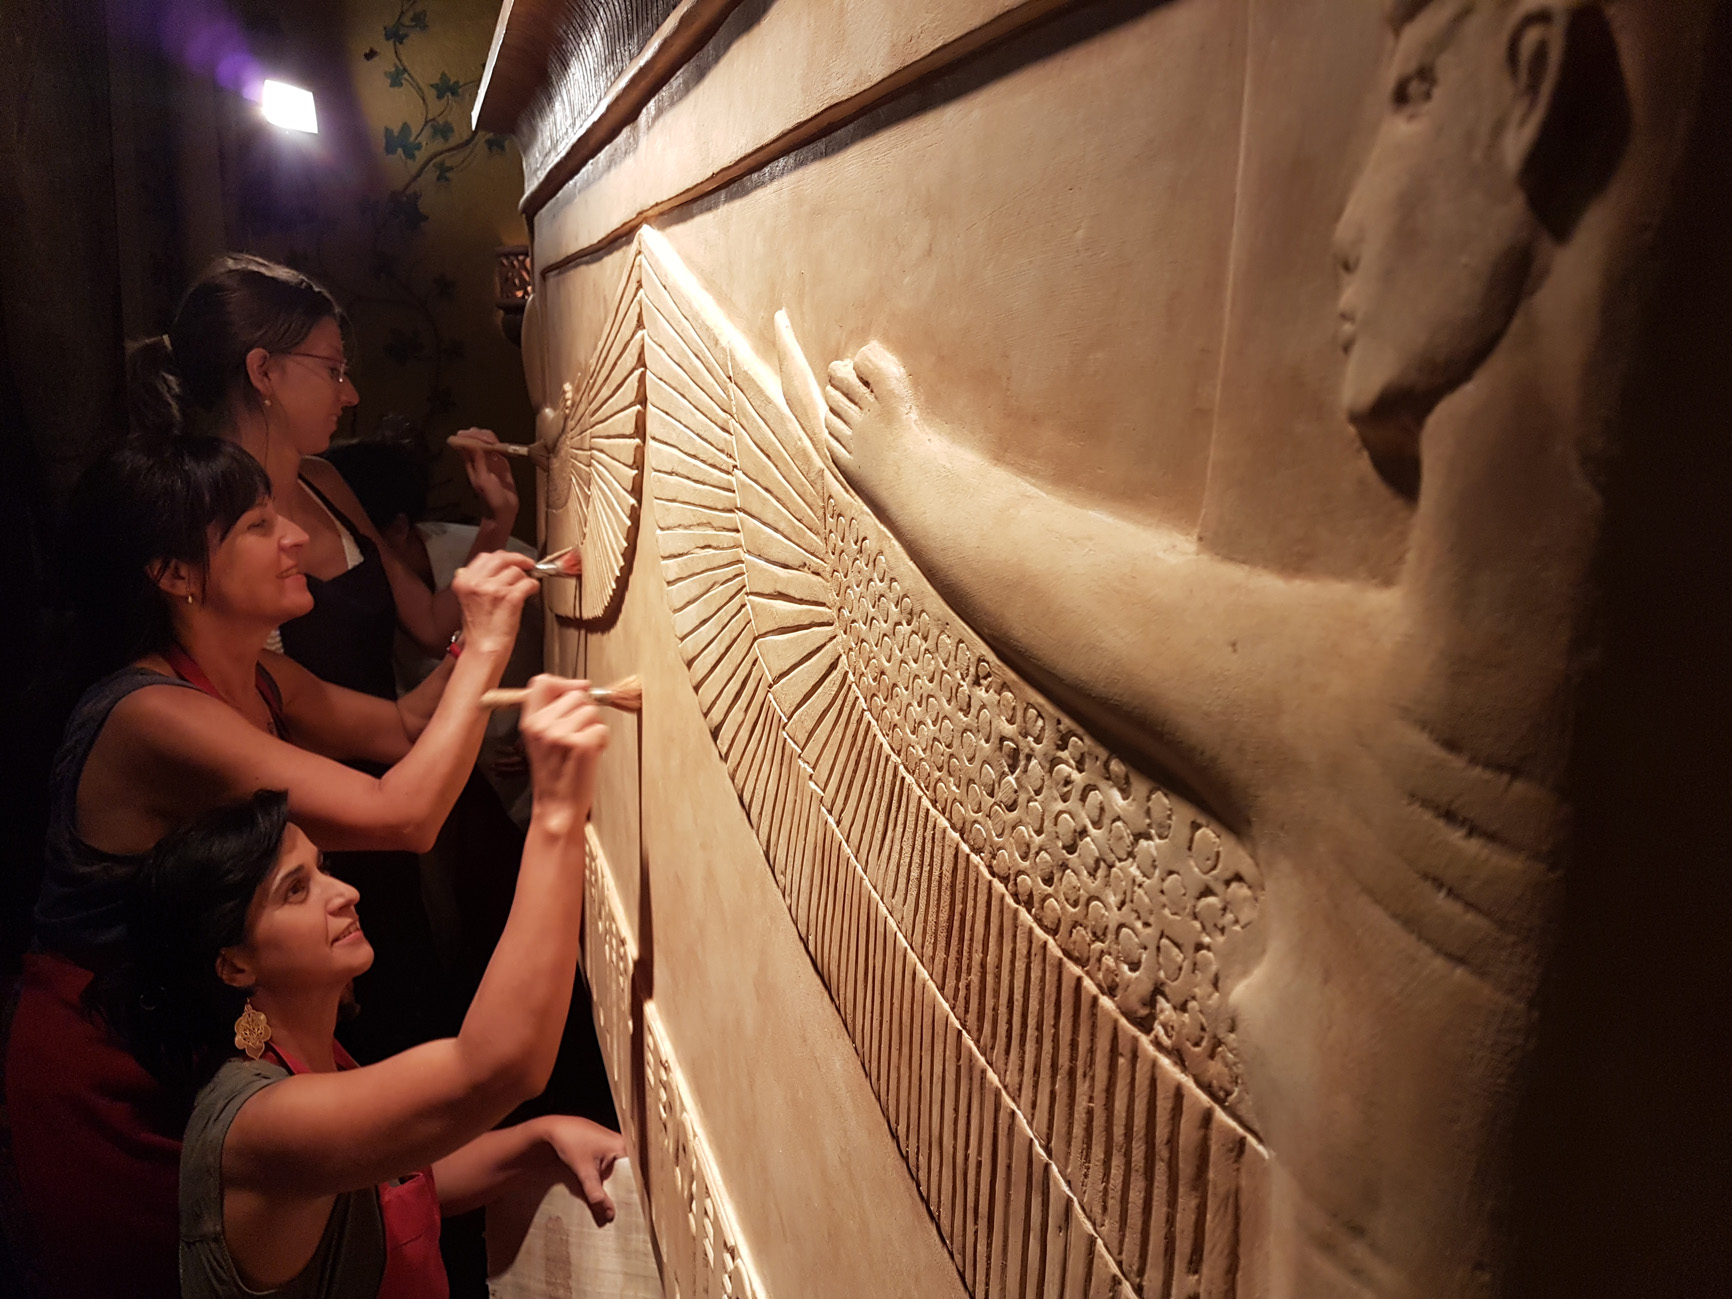 Fundación Sophia amplía sus exposiciones de cara al 100 aniversario del descubrimiento de la Tumba de Tutankhamón. El 4 de noviembre de 1922, el arqueólogo y egiptólogo Howard Carter descubrió la tumba intacta de uno de los faraones de la dinastía XVIII del Antiguo Egipto.